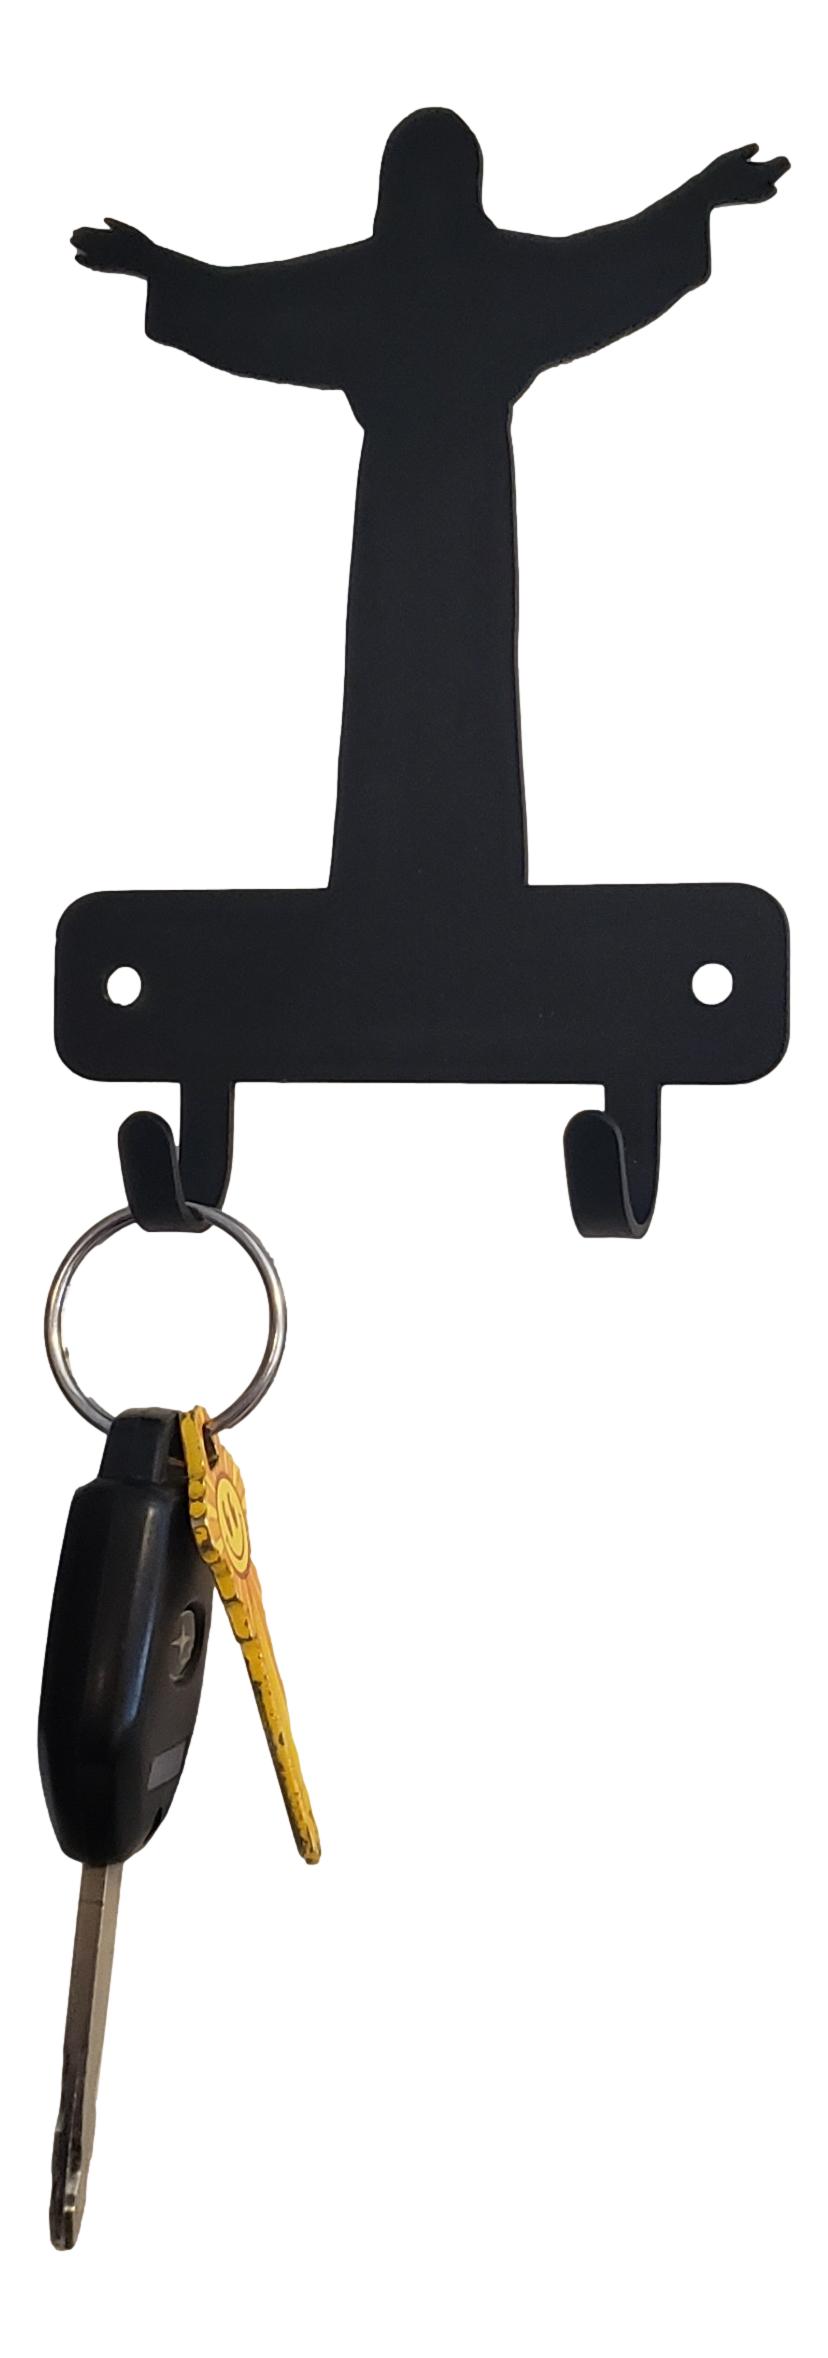 Jesus Rosary Beads Holder or Mini Key Rack with 2 hooks - The Metal Peddler Key Rack Christian, faith, key rack, mini kr, religion, religious